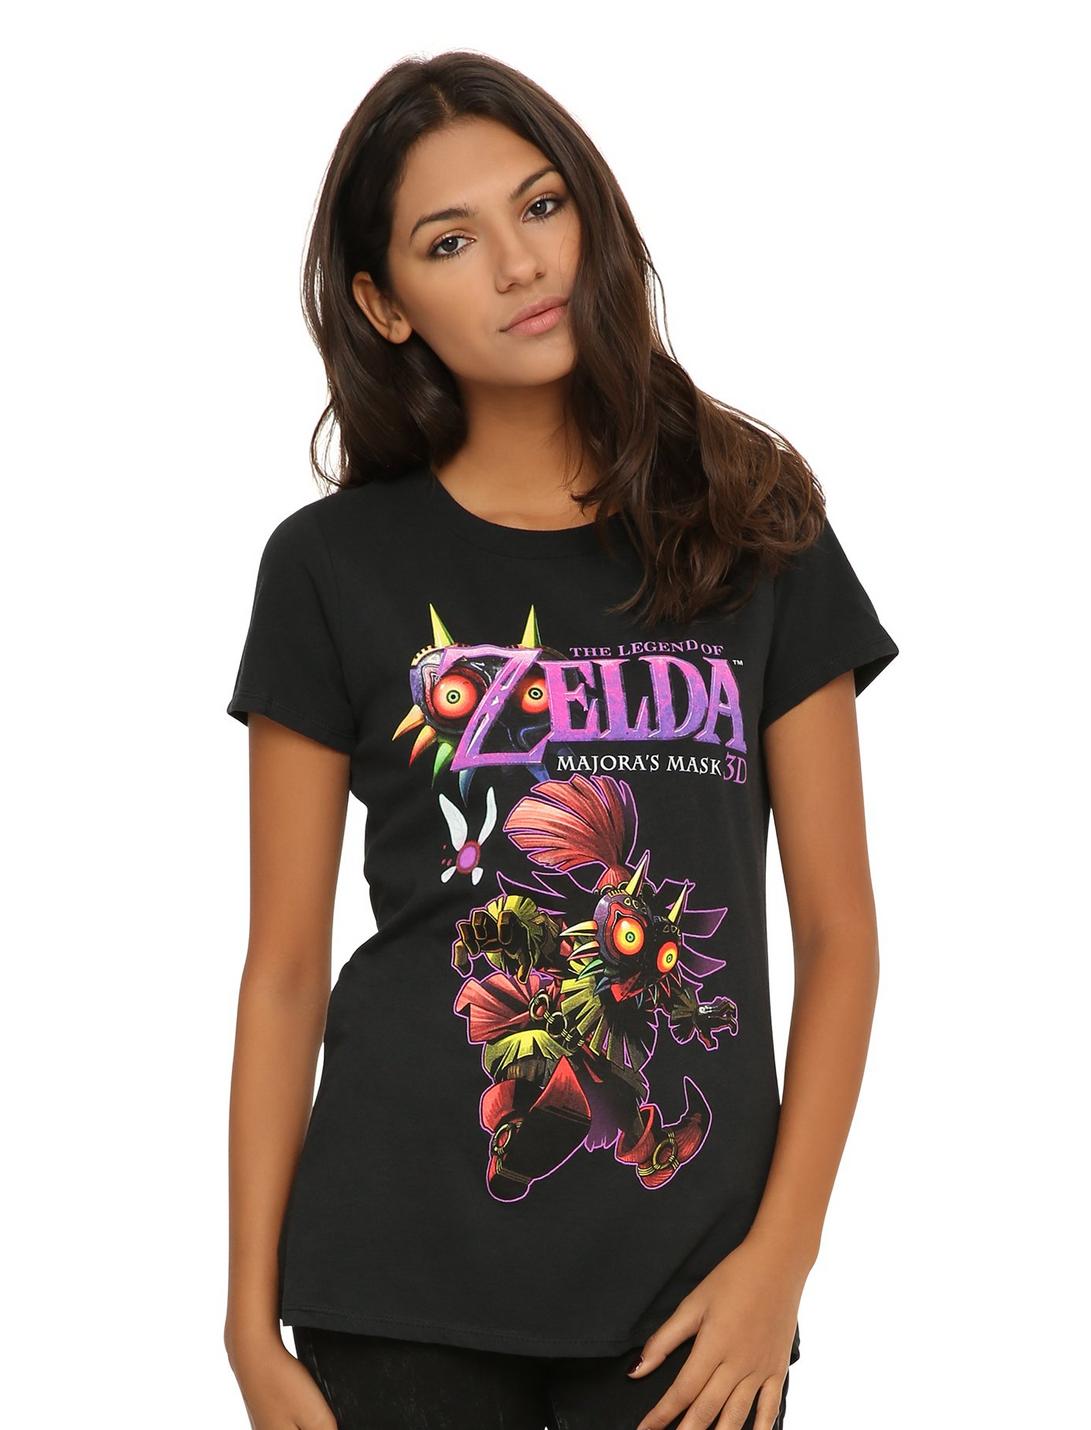 The Legend Of Zelda: Majora's Mask 3D Girls T-Shirt, BLACK, hi-res